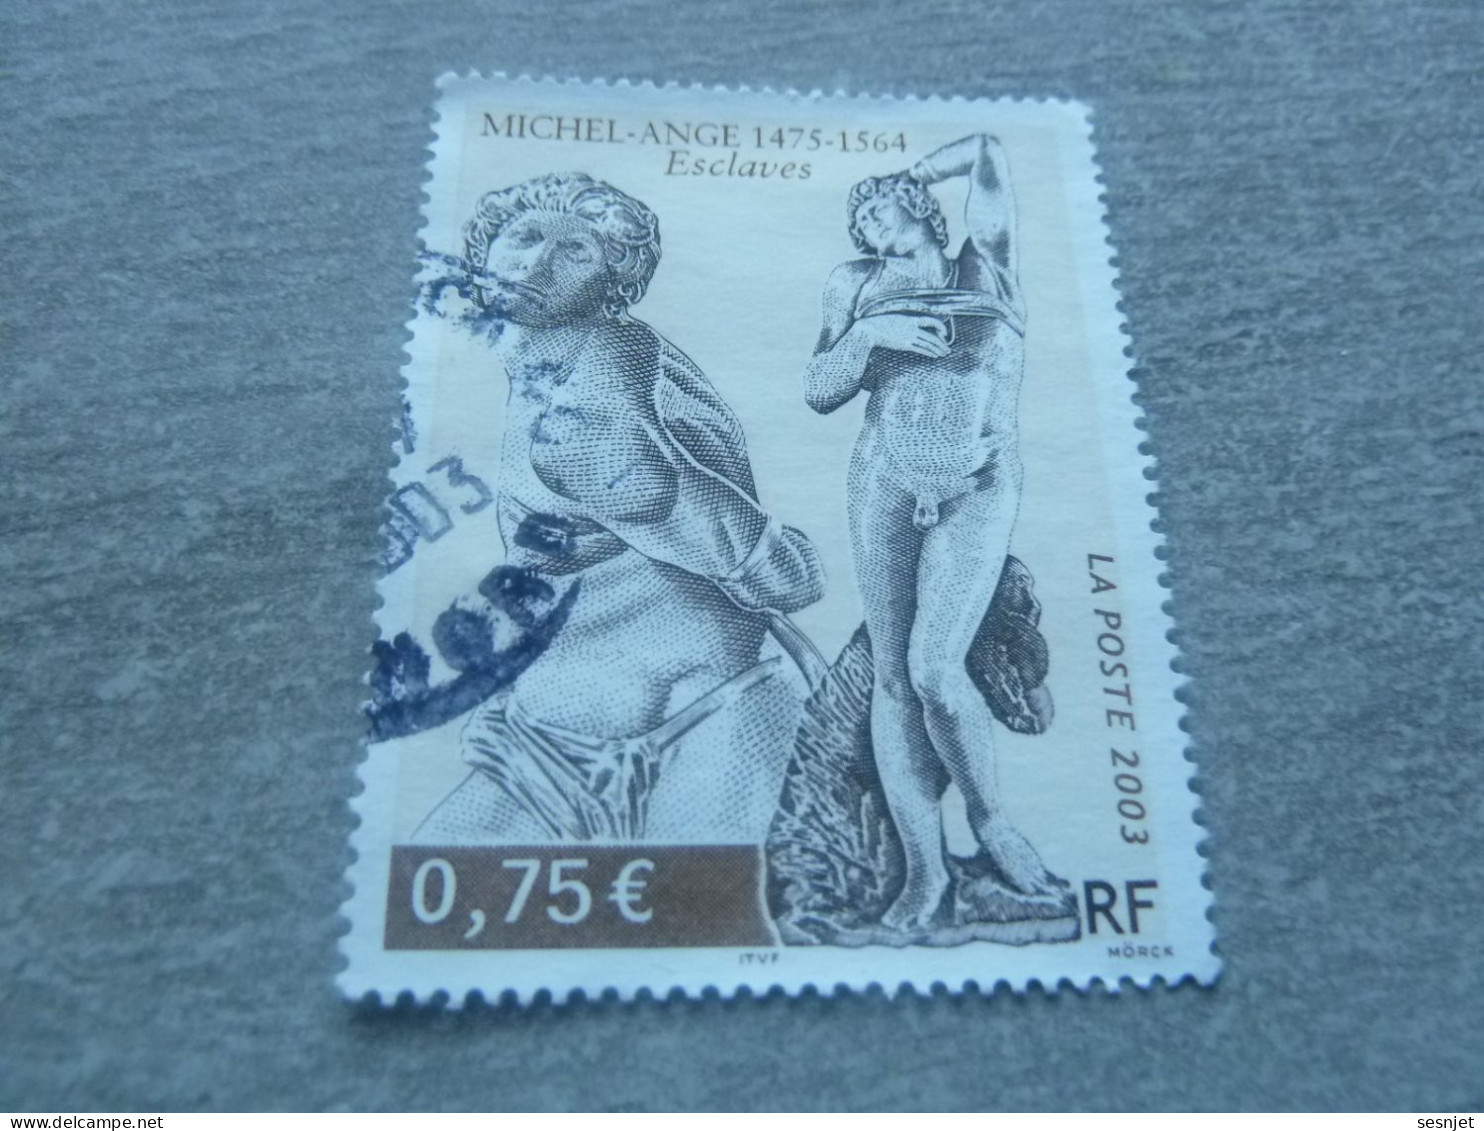 Michel-Ange (1475-1564) - Esclaves - 0.75 € - Yt 3558 - Multicolore - Oblitéré - Année 2003 - - Scultura